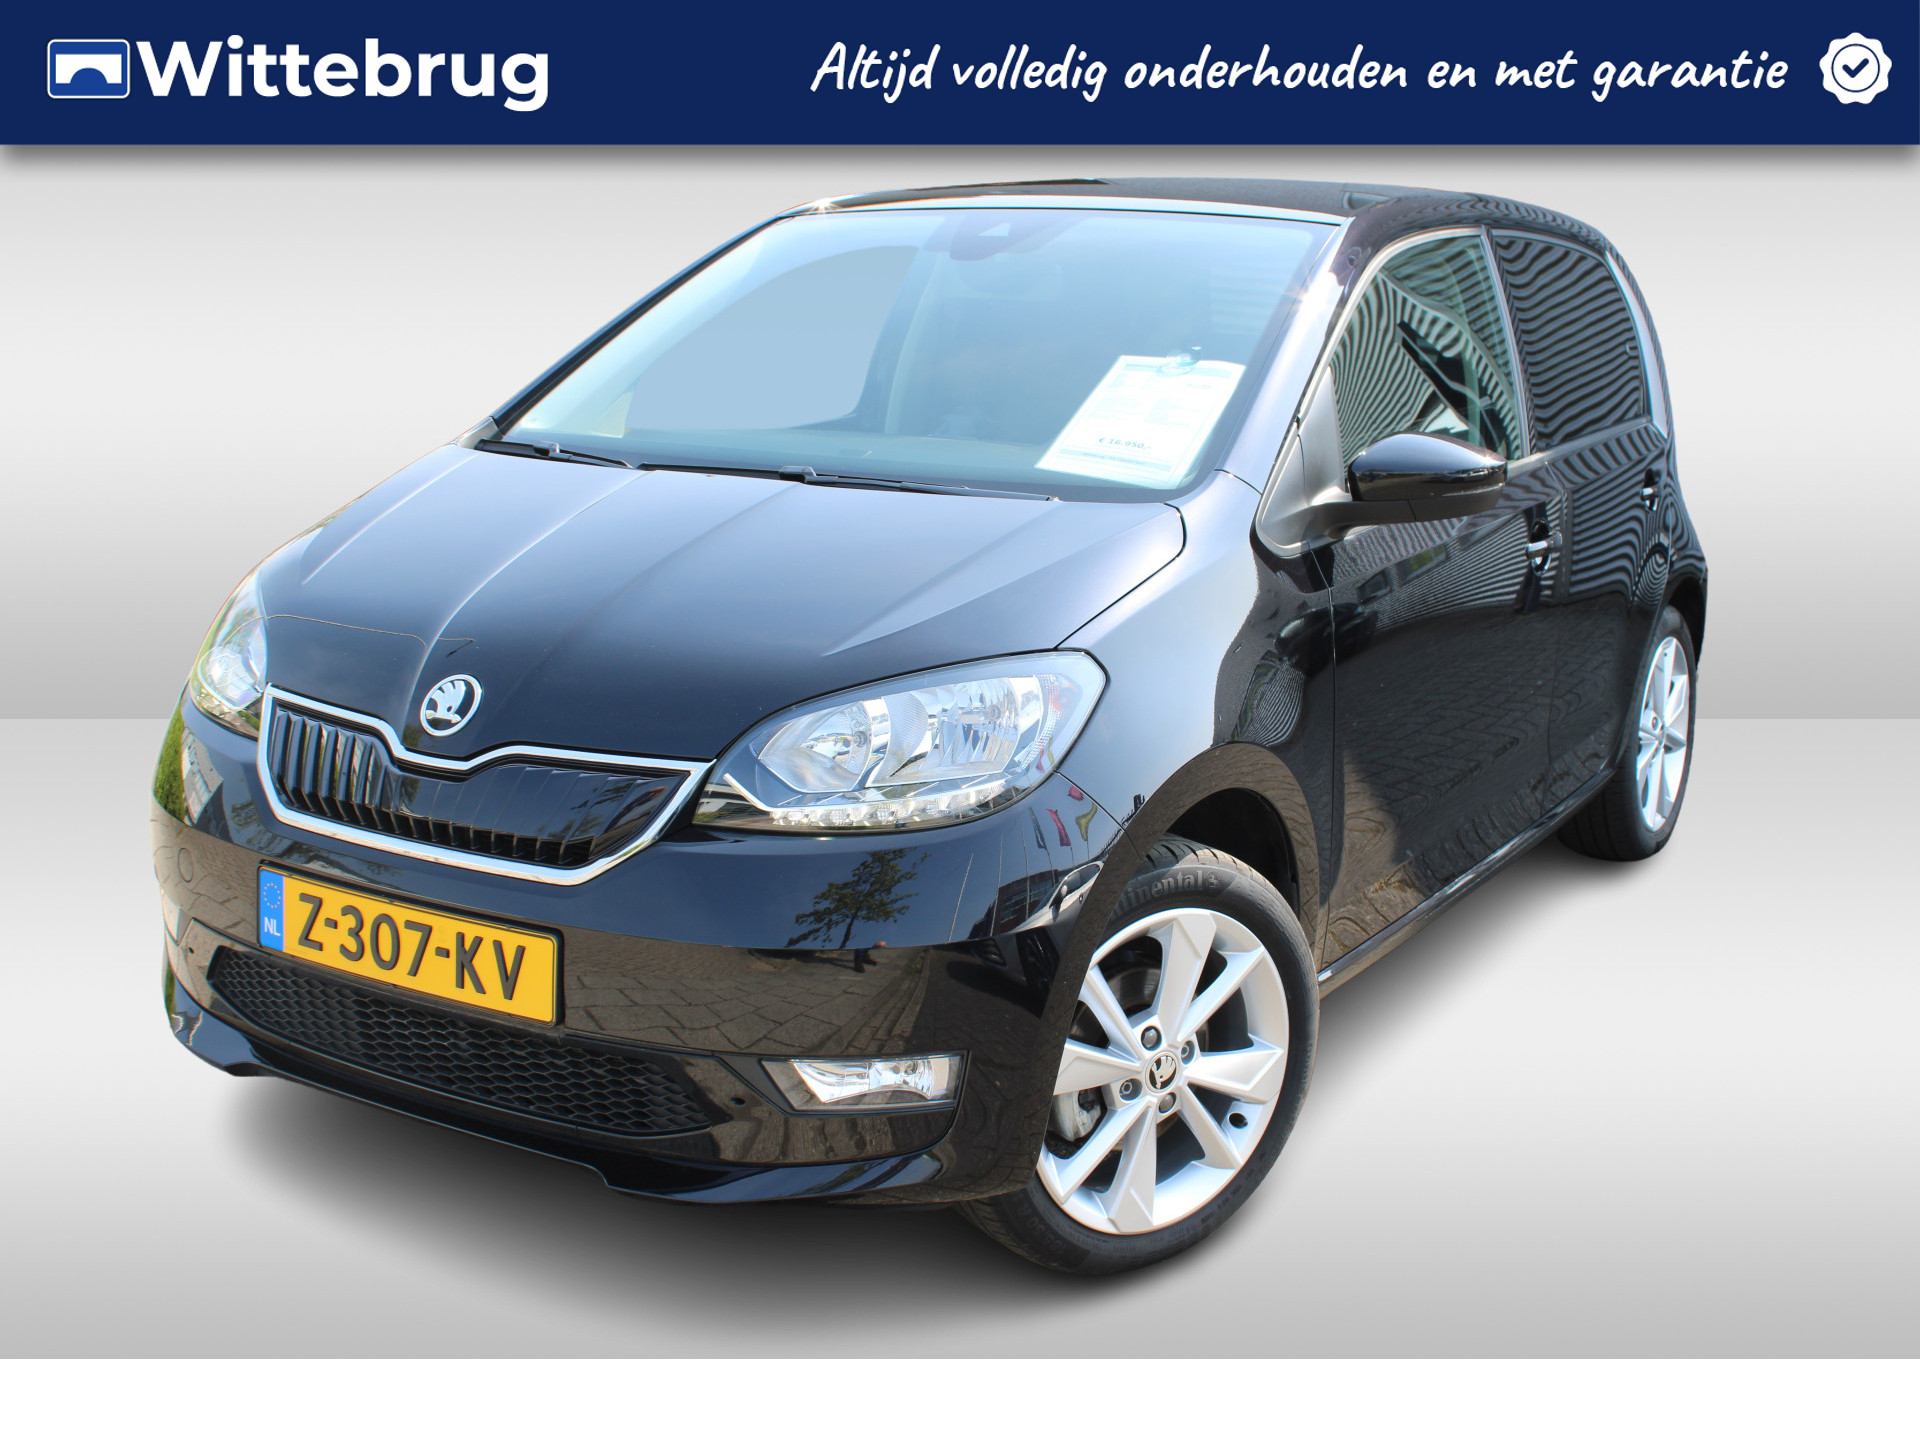 Škoda Citigo e-iV EV Best Of Airco / Navigatie via App / Bluetooth / 16"LM Velgen € 2000,- SEPP Subsidie mogelijk